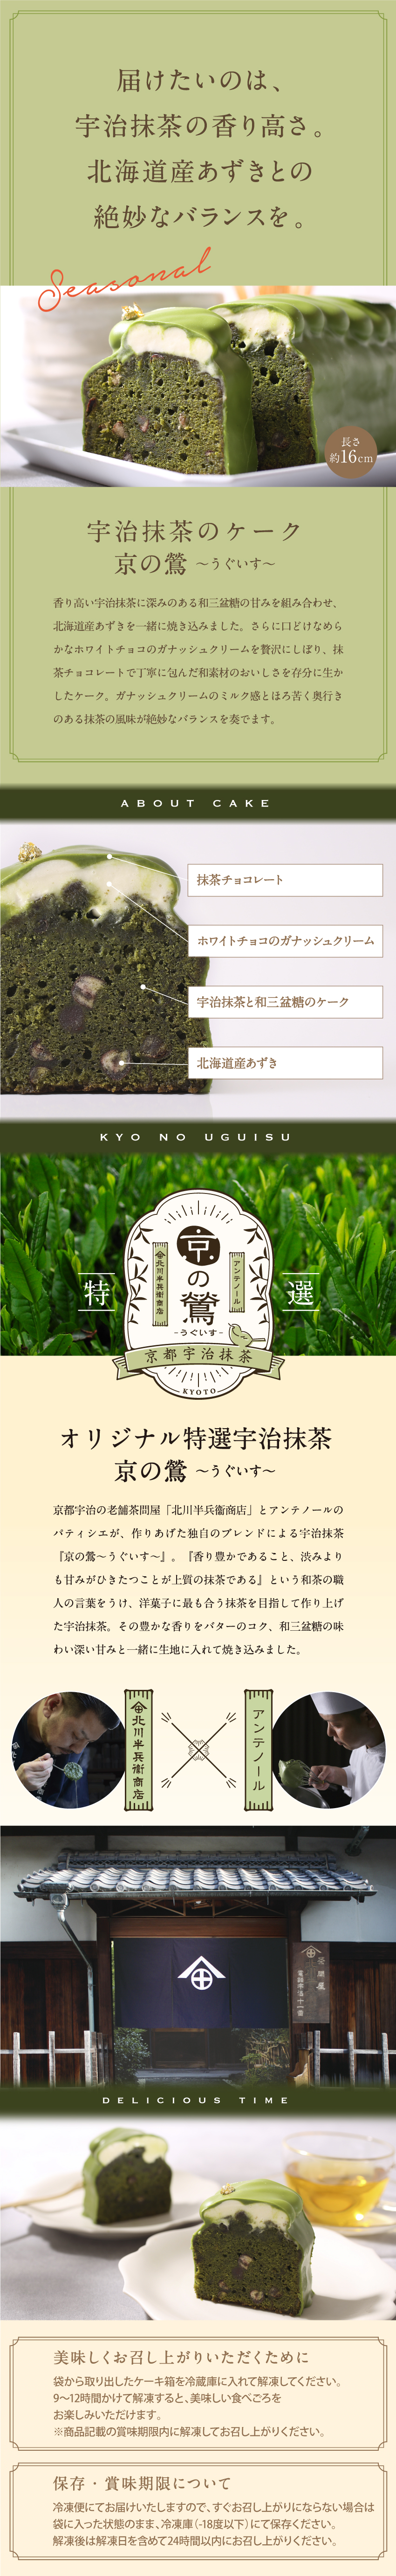 届けたいのは、宇治抹茶の香り高さ。北海道産あずきとの絶妙なバランスを。洋菓子に最もあう抹茶を目指して作り上げた宇治抹茶を使用。